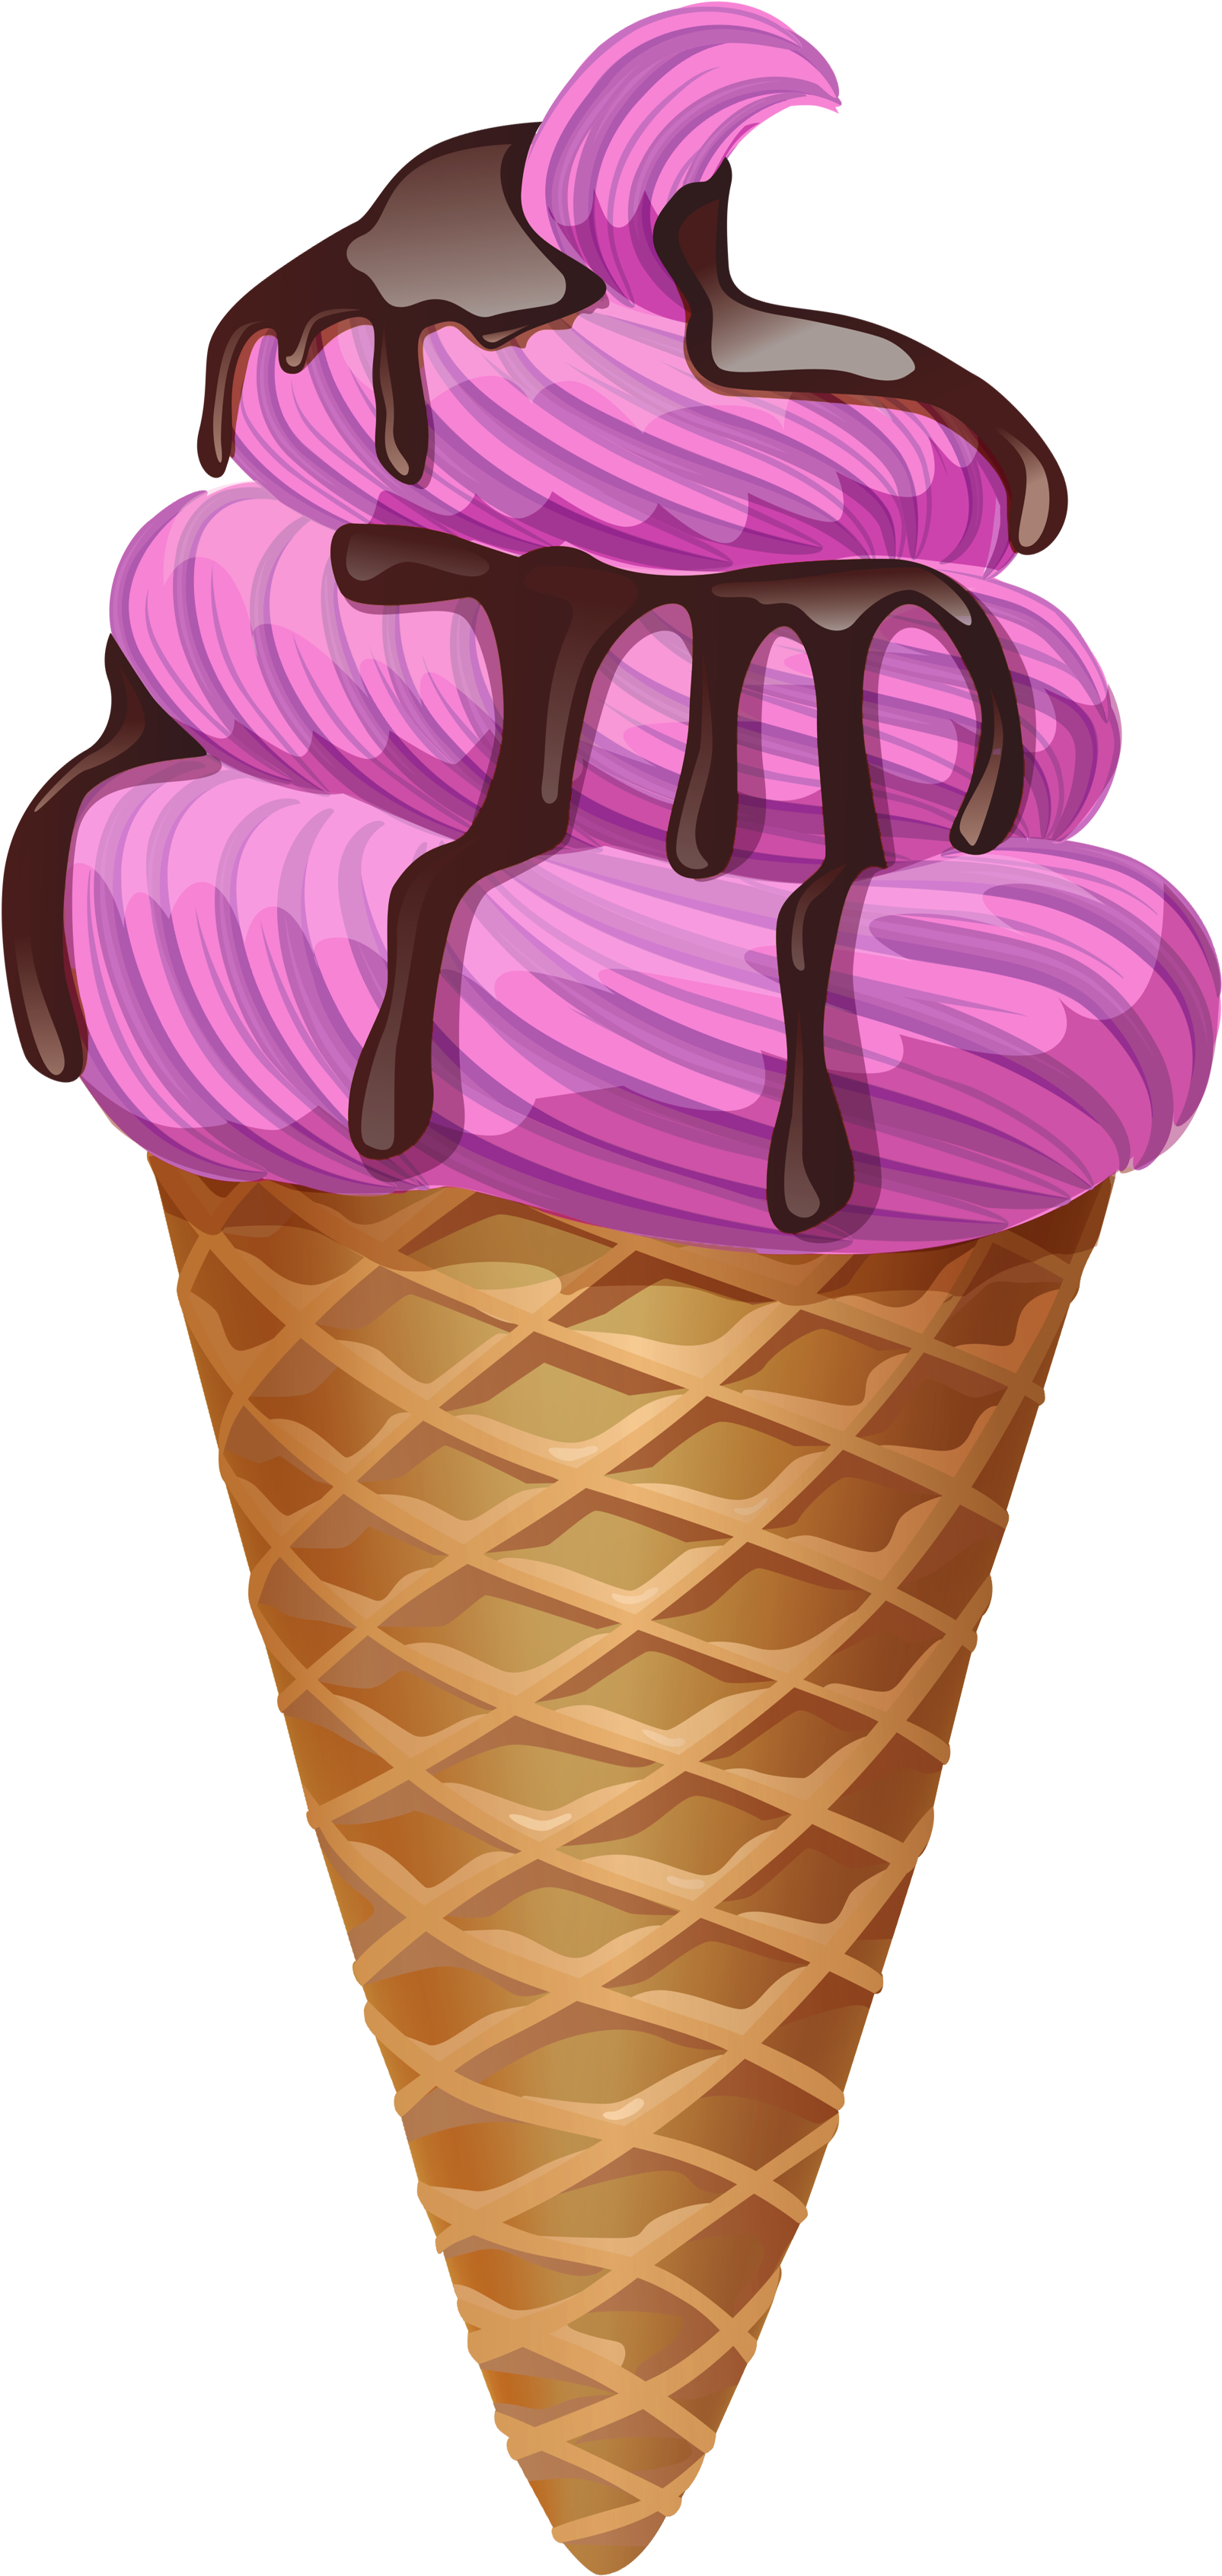 Transparent Pink Ice Cream Cone Picture - Ice Cream Cone Transparent (1715x3497)